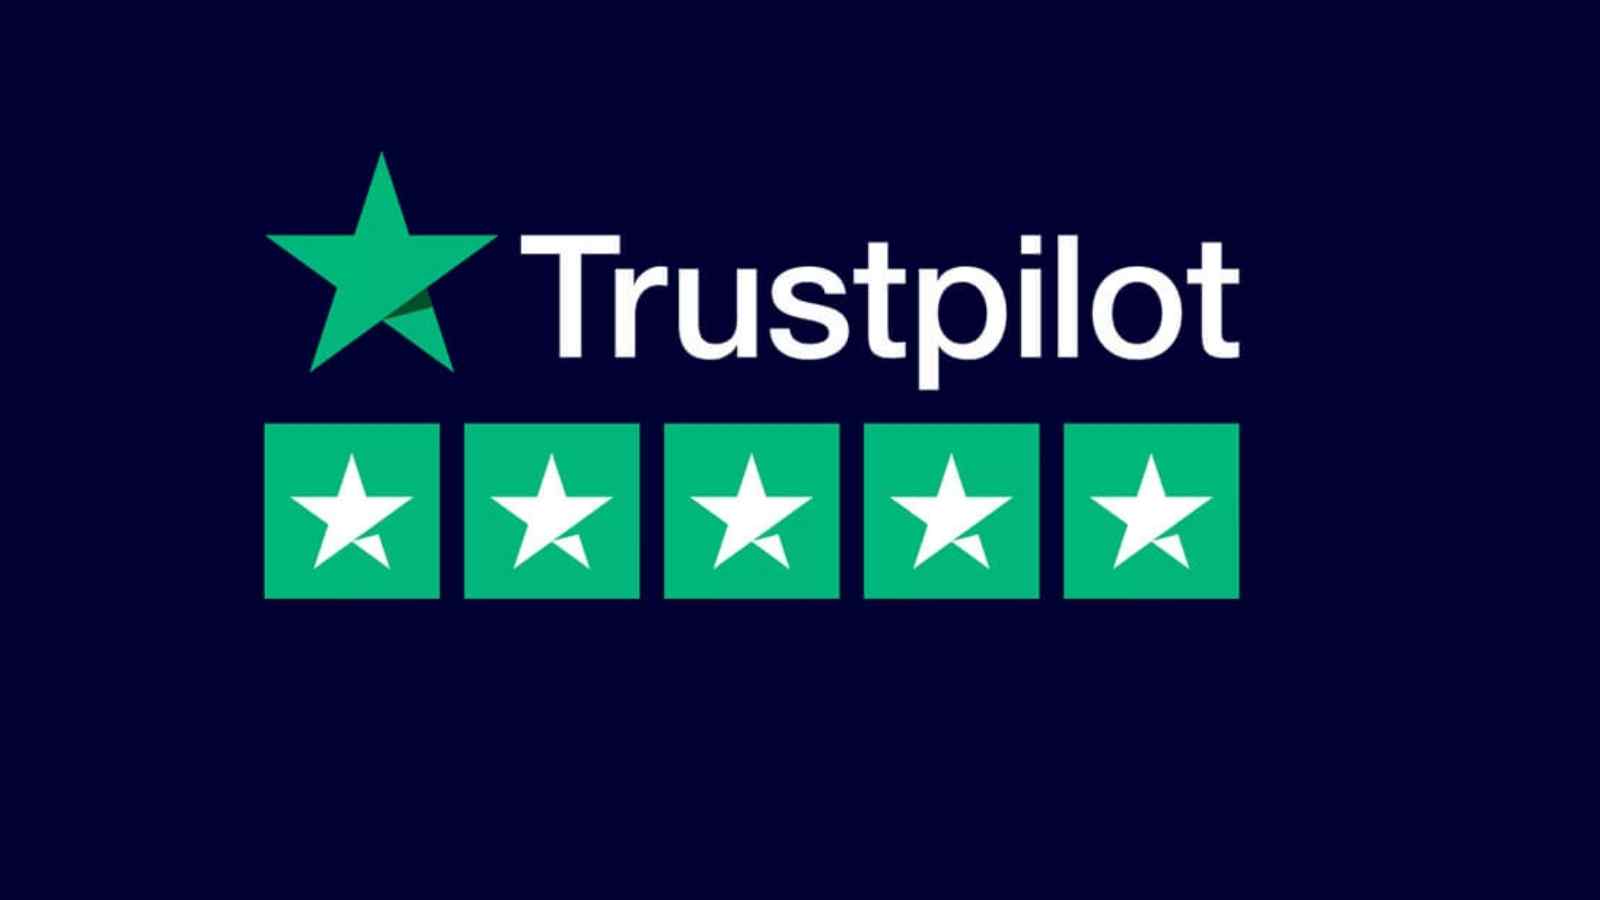 Trustpilot cresce di anno in anno, e fa del suo meglio per mantenersi un terreno neutrale tra aziende e utenti